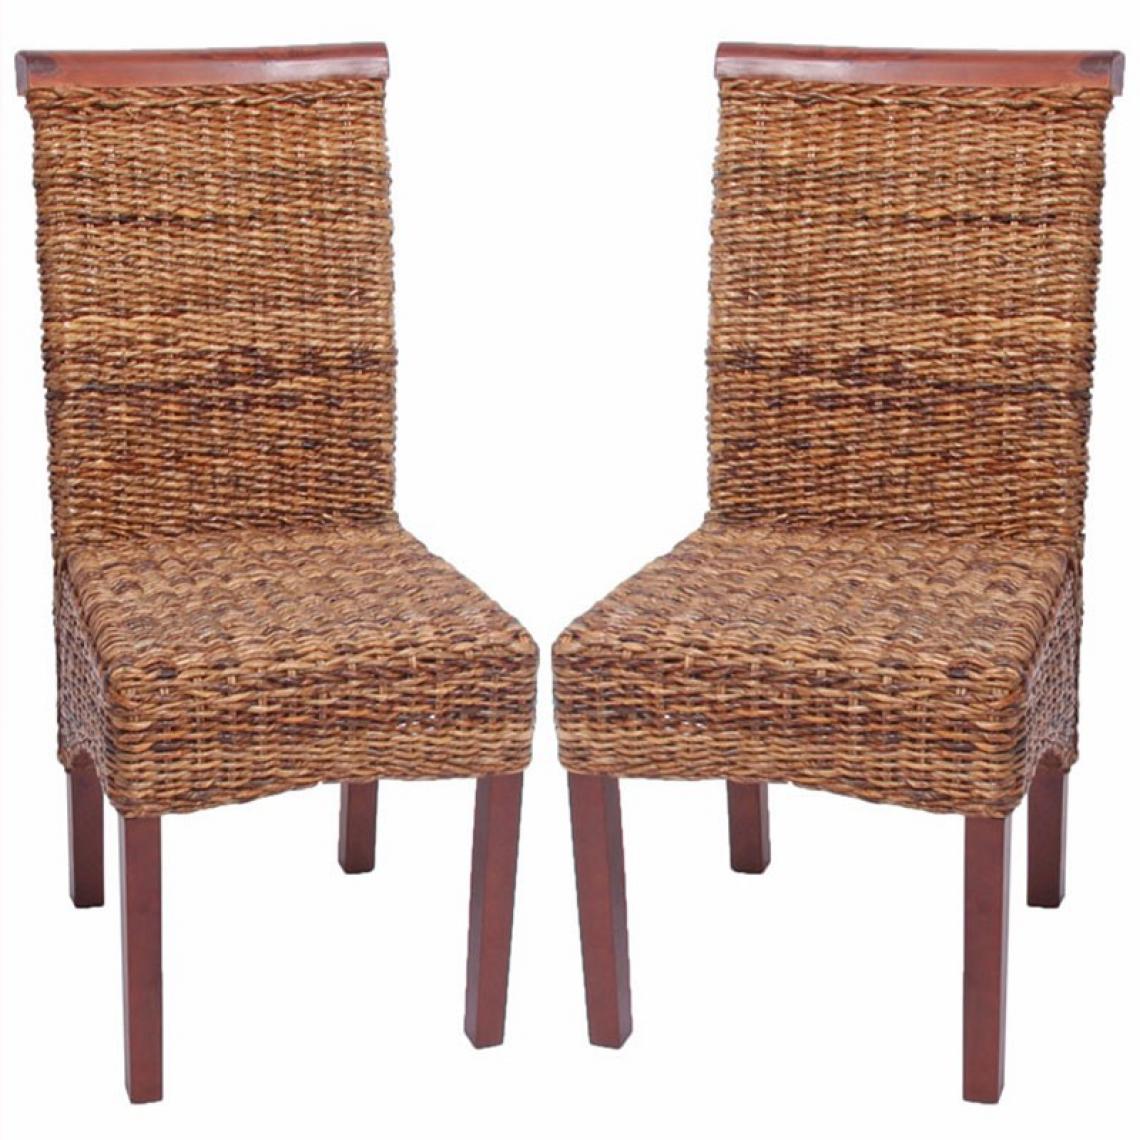 Decoshop26 - Lot de 2 chaises en rotin banane tressée pieds marron CDS04003 - Chaises